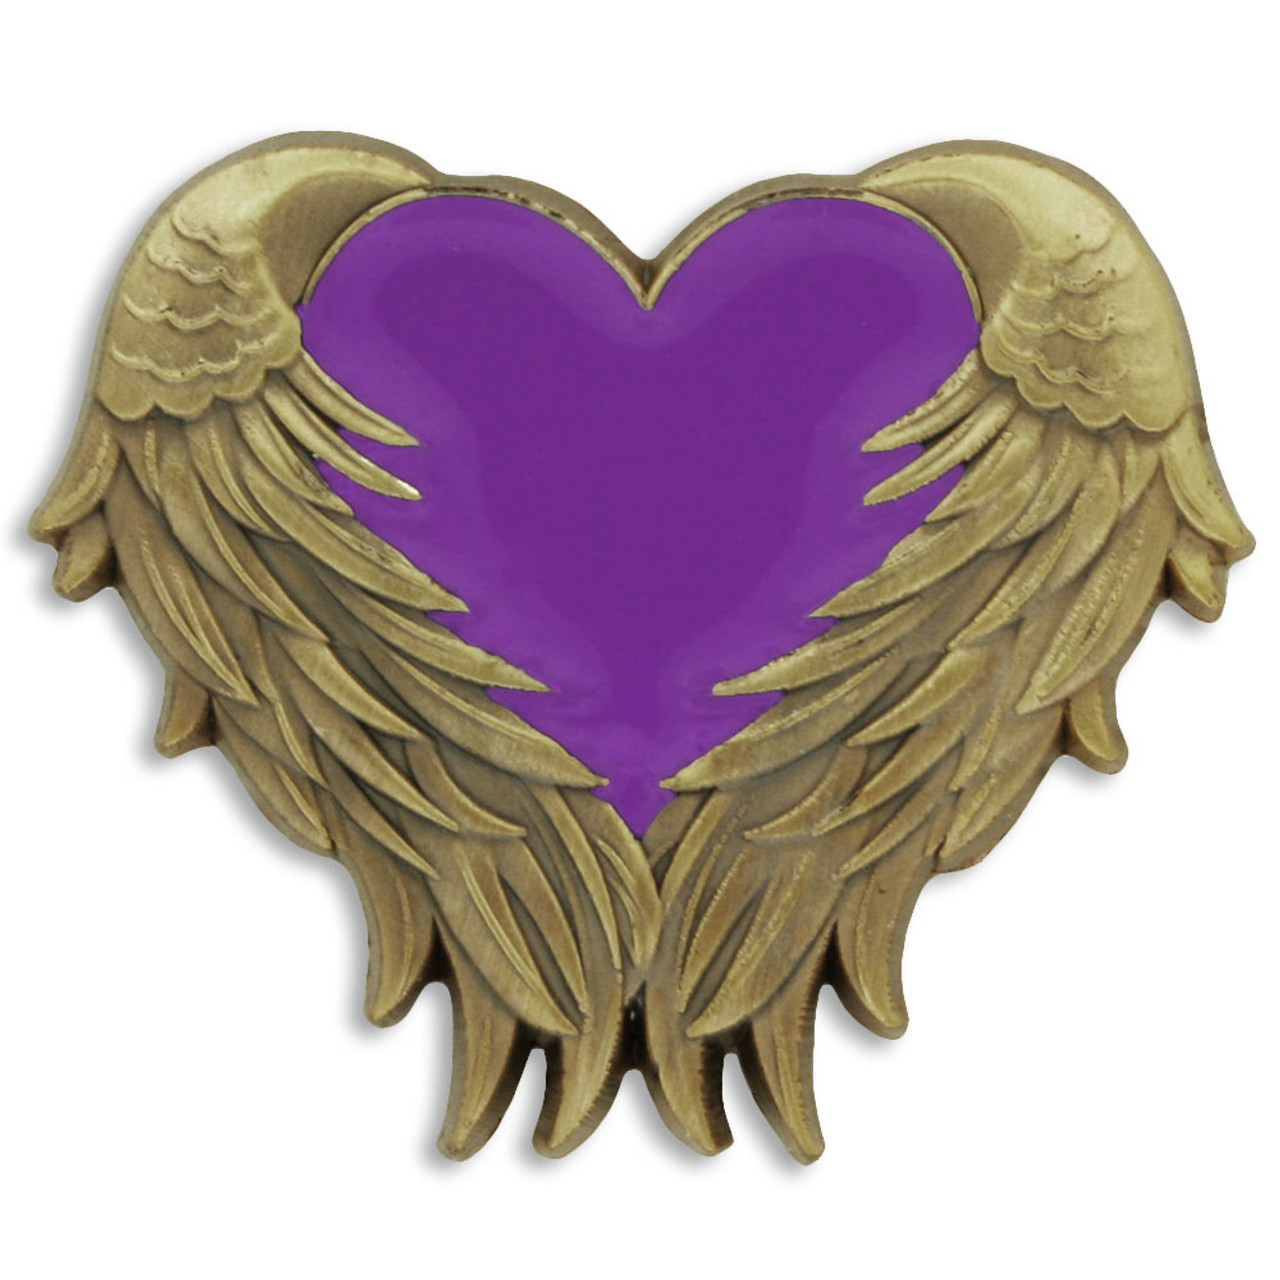 purple heart with angel wings